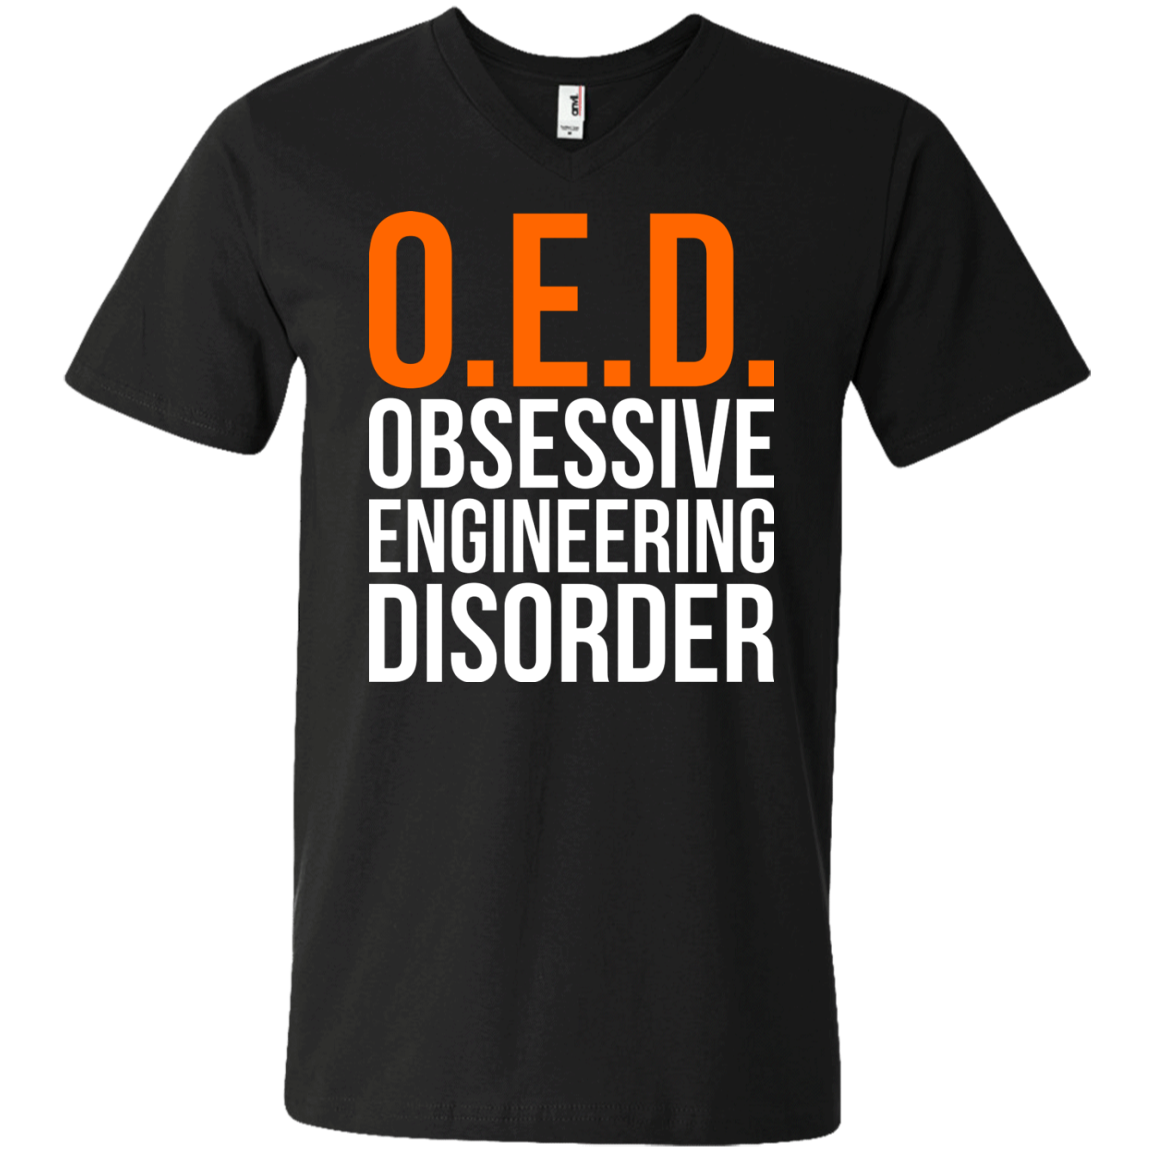 OED - Trastorno obsesivo de la ingeniería